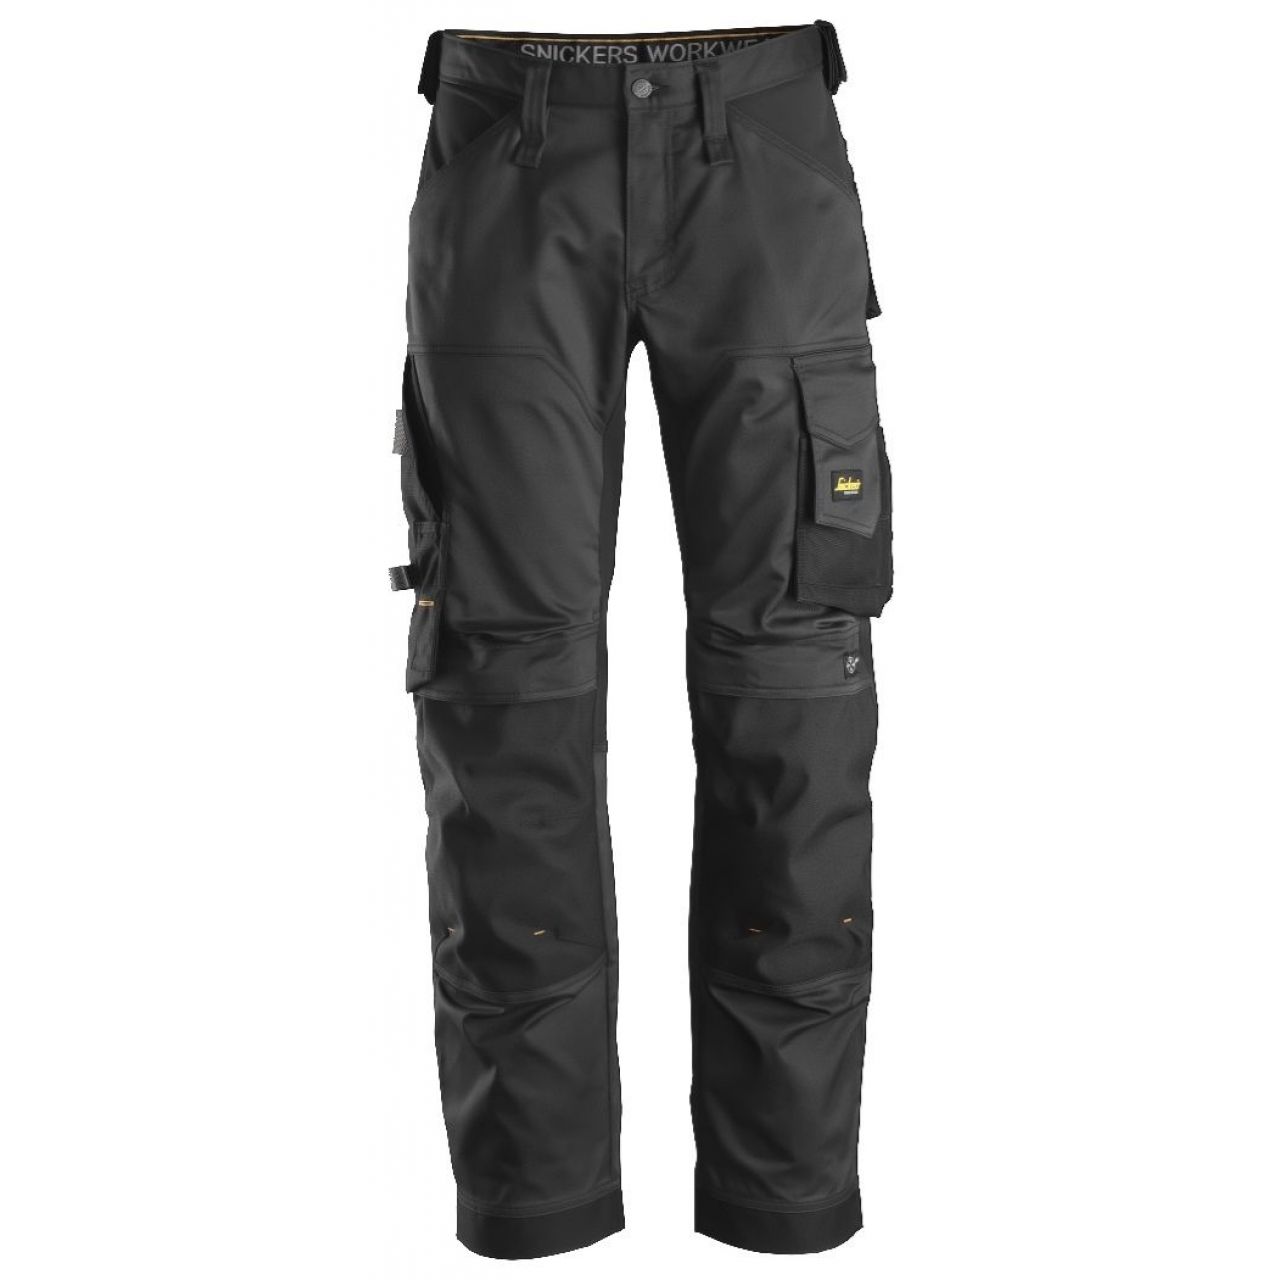 Pantalon elastico ajuste holgado AllroundWork negro talla 092